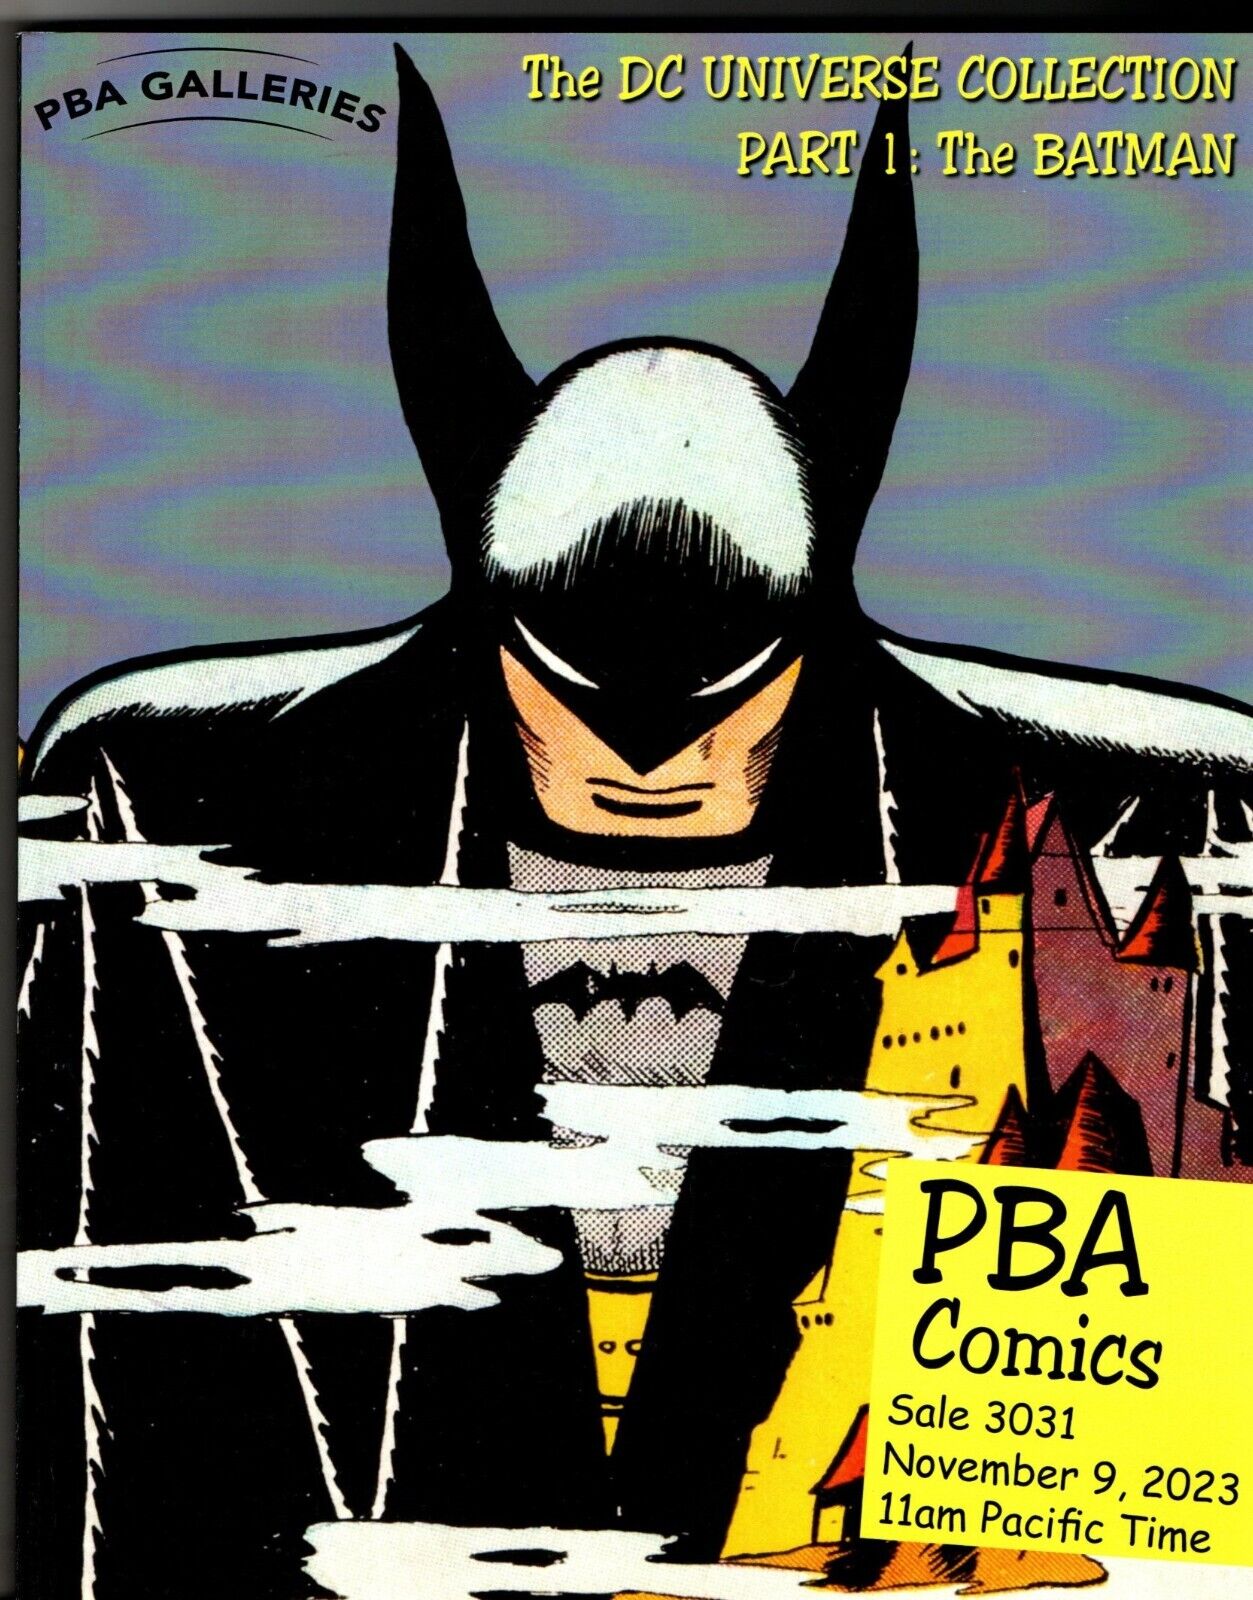 PBA COMICS AUCTION CATALOGUE: DC UNIVERSE COLLECTION PART 1 THE BATMAN HARDCOVER